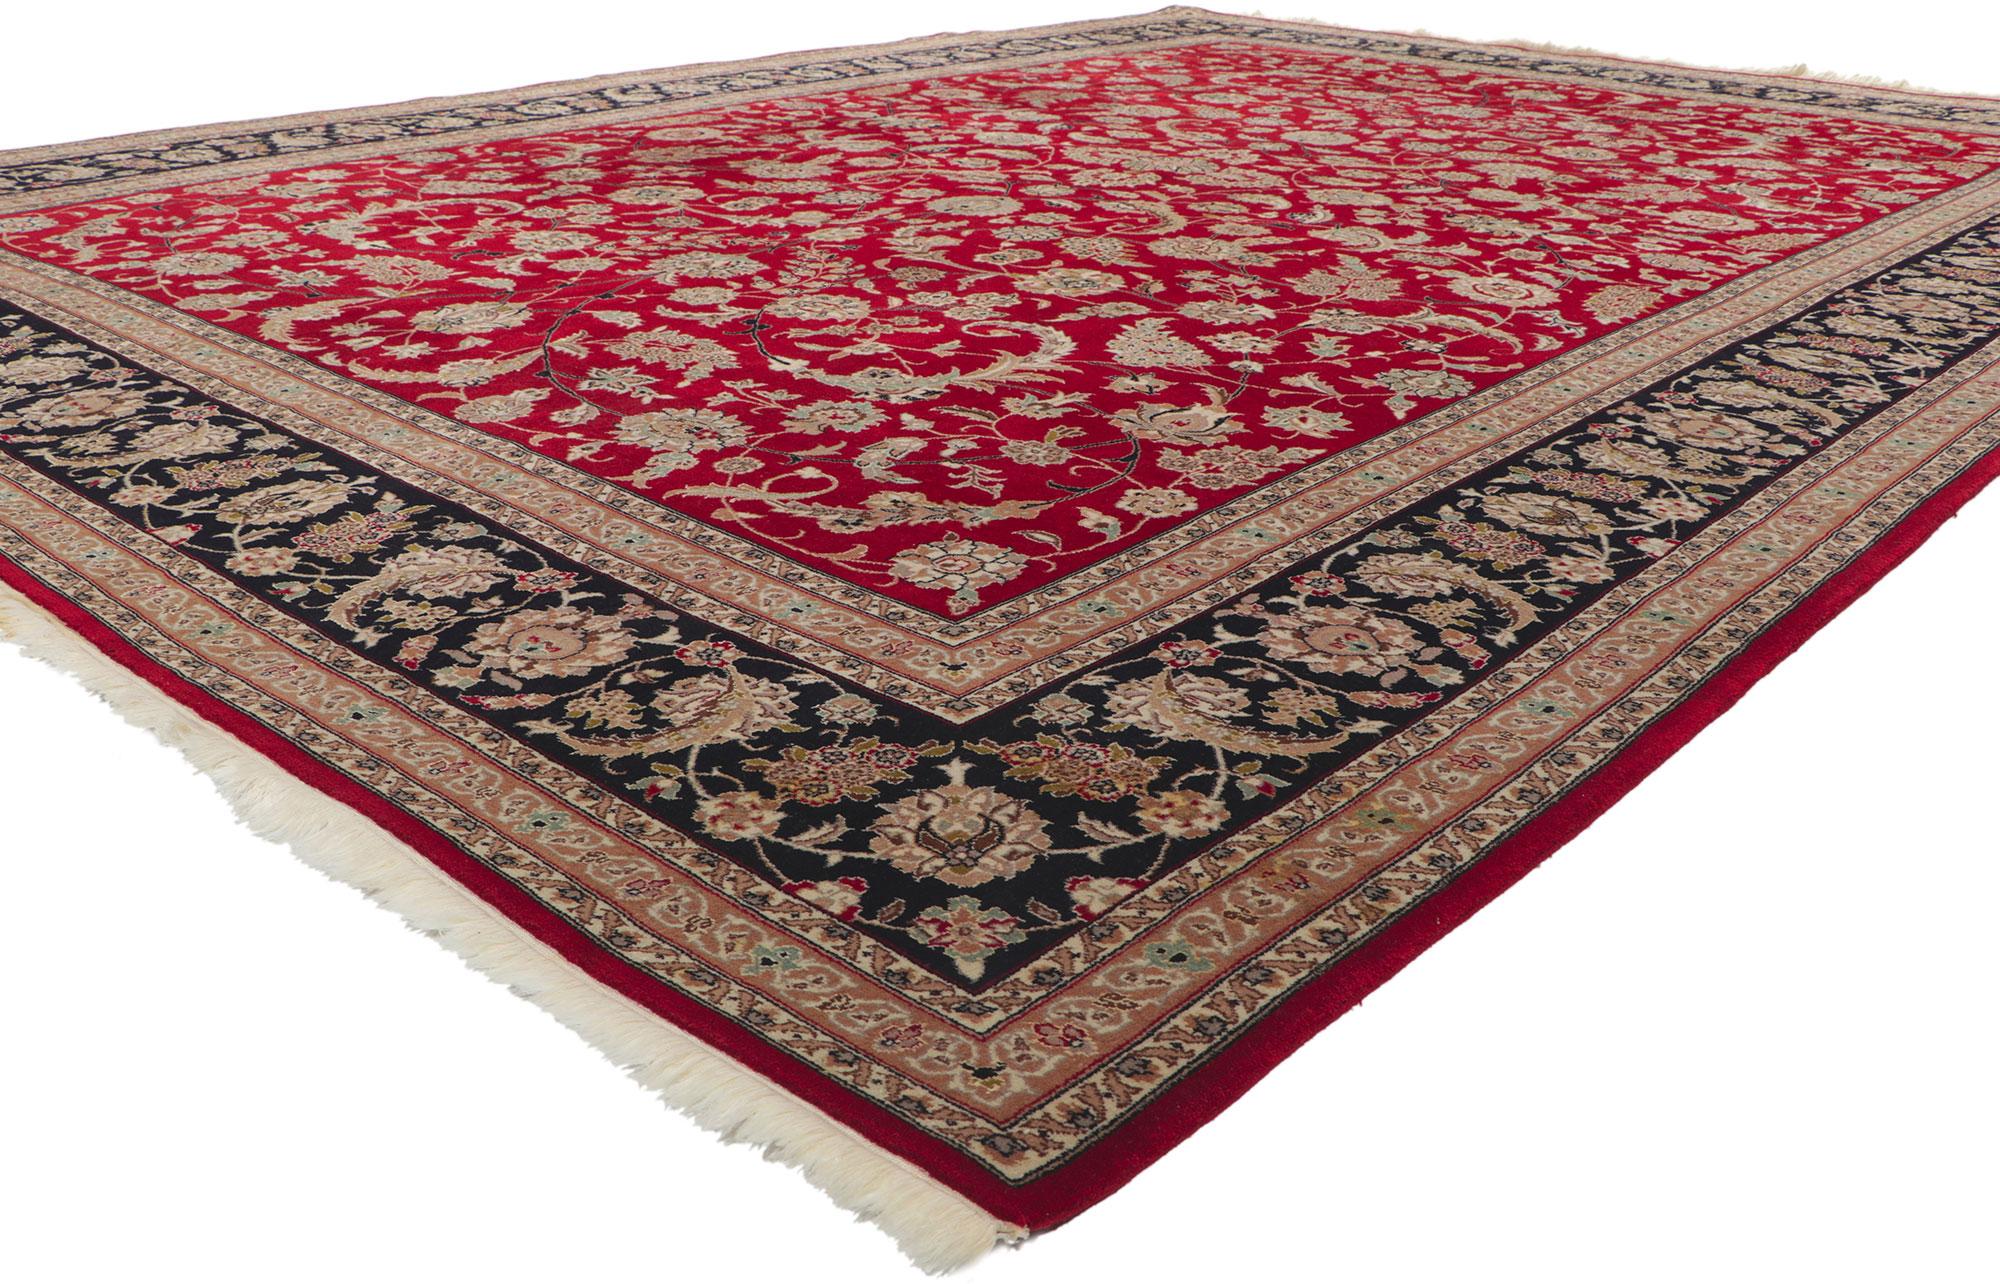 78360 Vintage Indian Tabriz Wool and Silk Rug, 09'09 x 13'07. Mit seiner zeitlosen Anziehungskraft und den kunstvollen dekorativen Details ist dieser alte indische Täbriz-Teppich aus Wolle und Seide eine fesselnde Vision gewebter Schönheit. Das rote